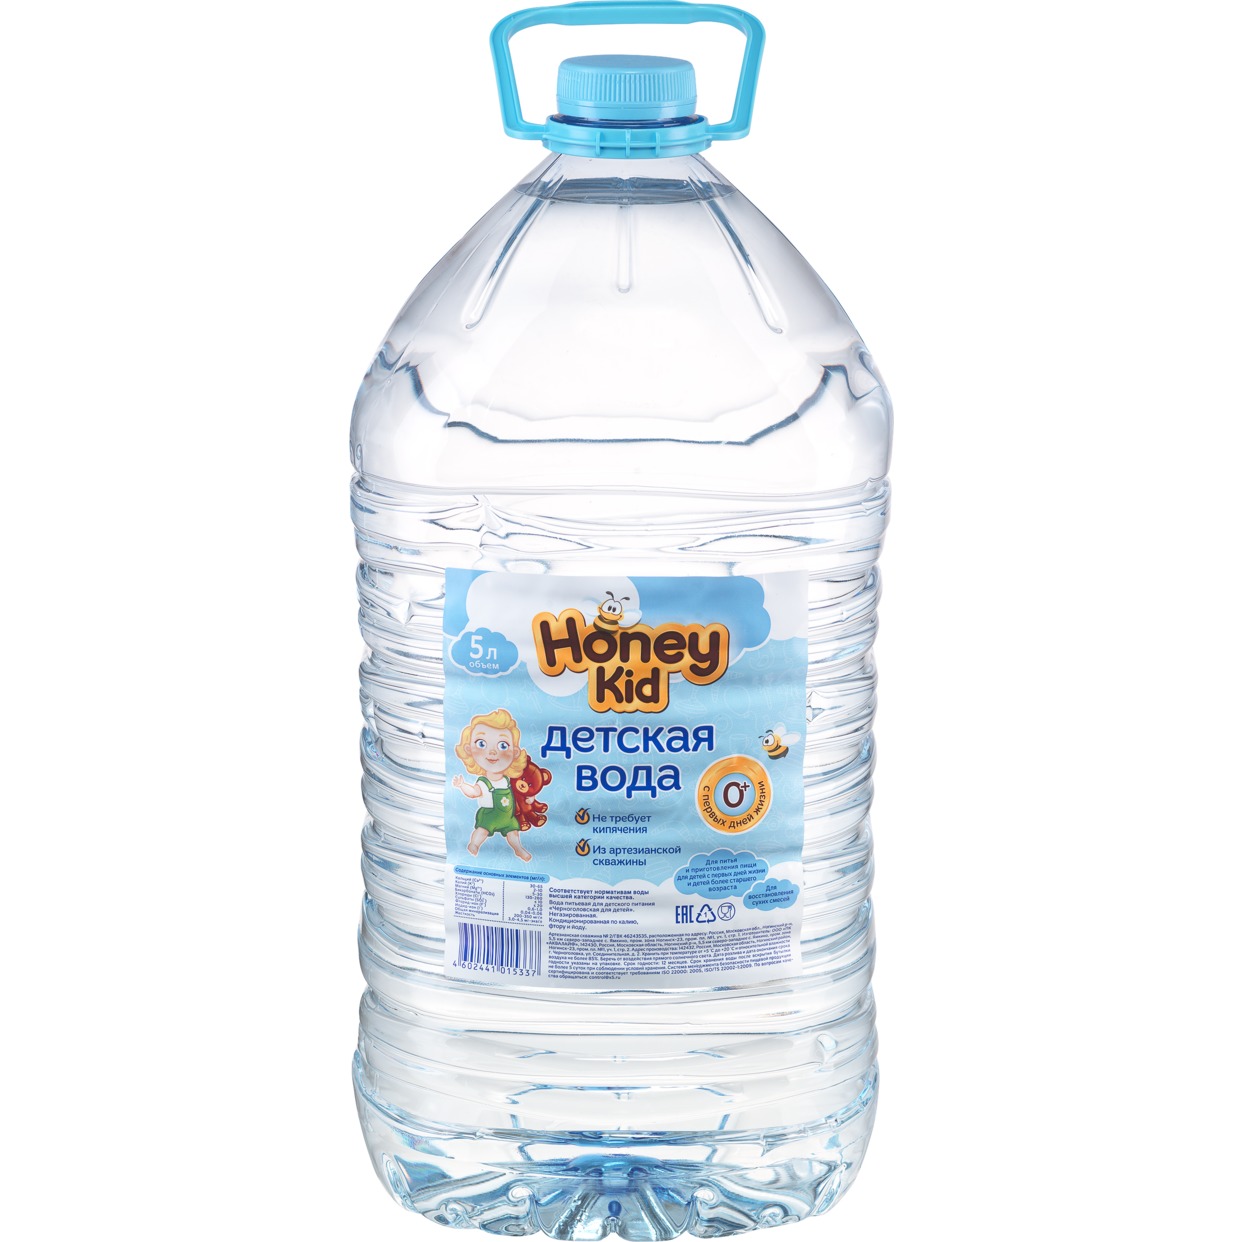 Вода Honey kid, Черноголовская, питьевая, 5 л